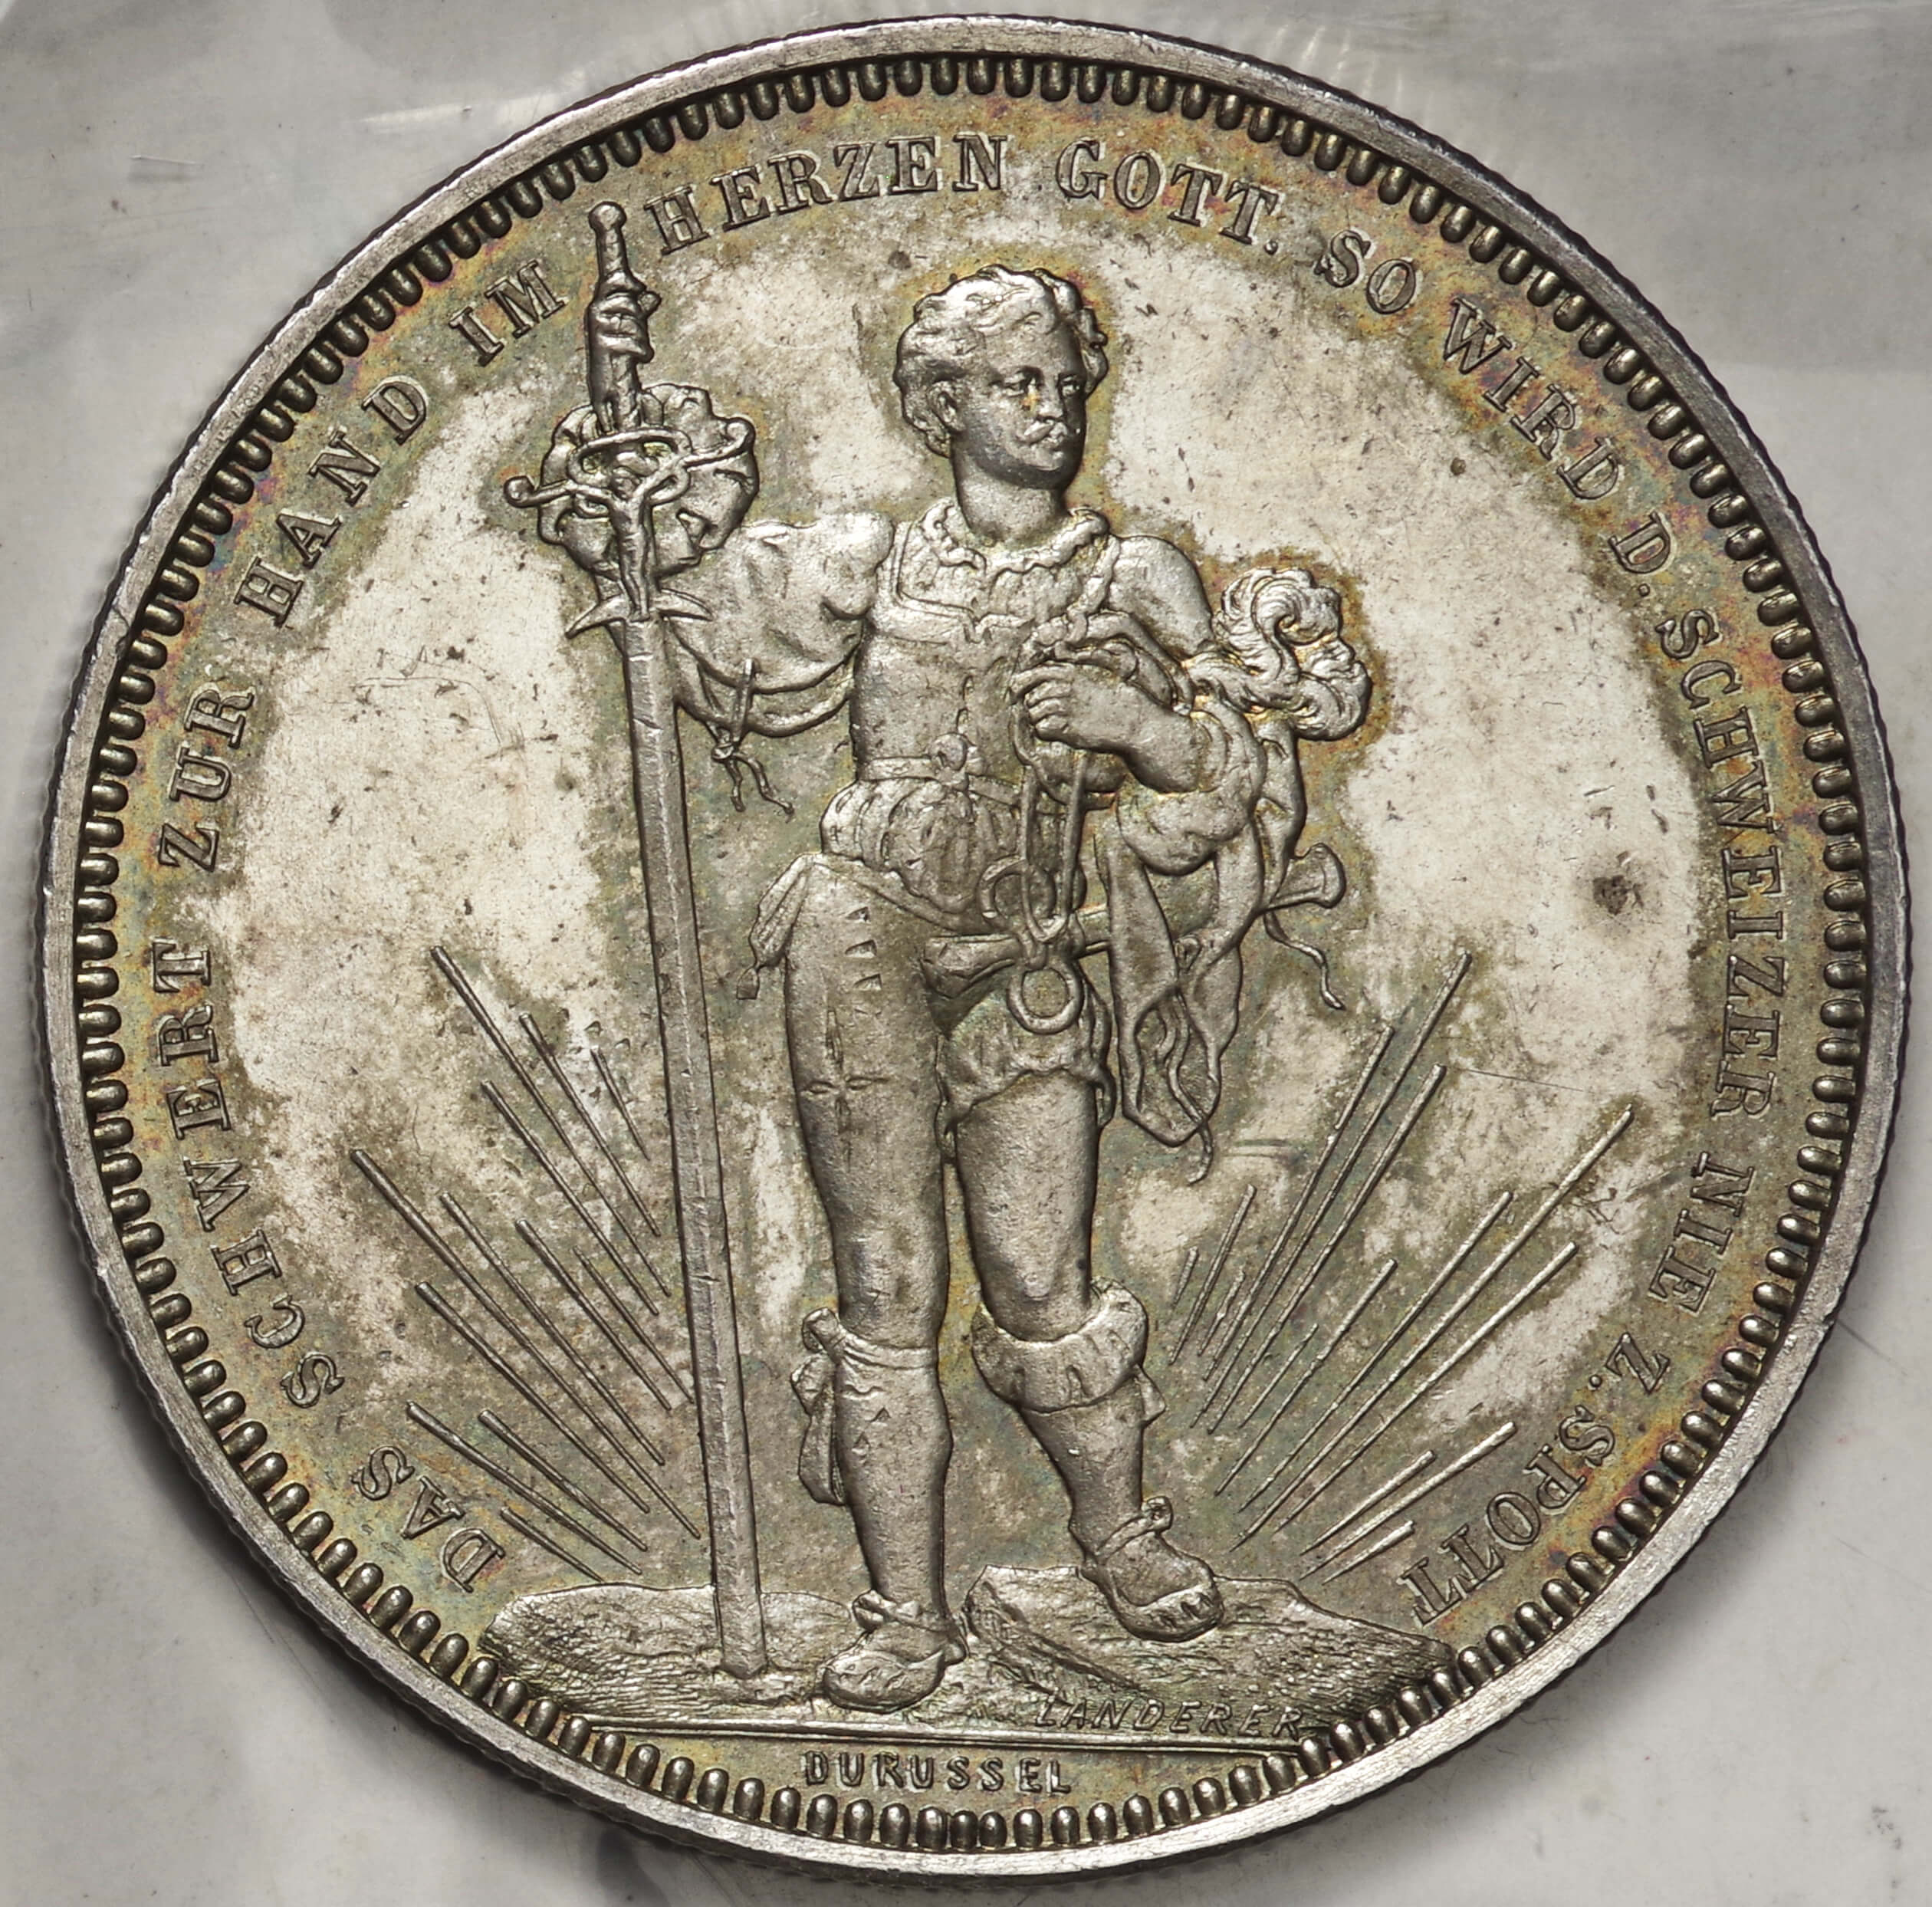 スイス射撃祭 バーゼル 5フラン銀貨 1879年 - 貨幣